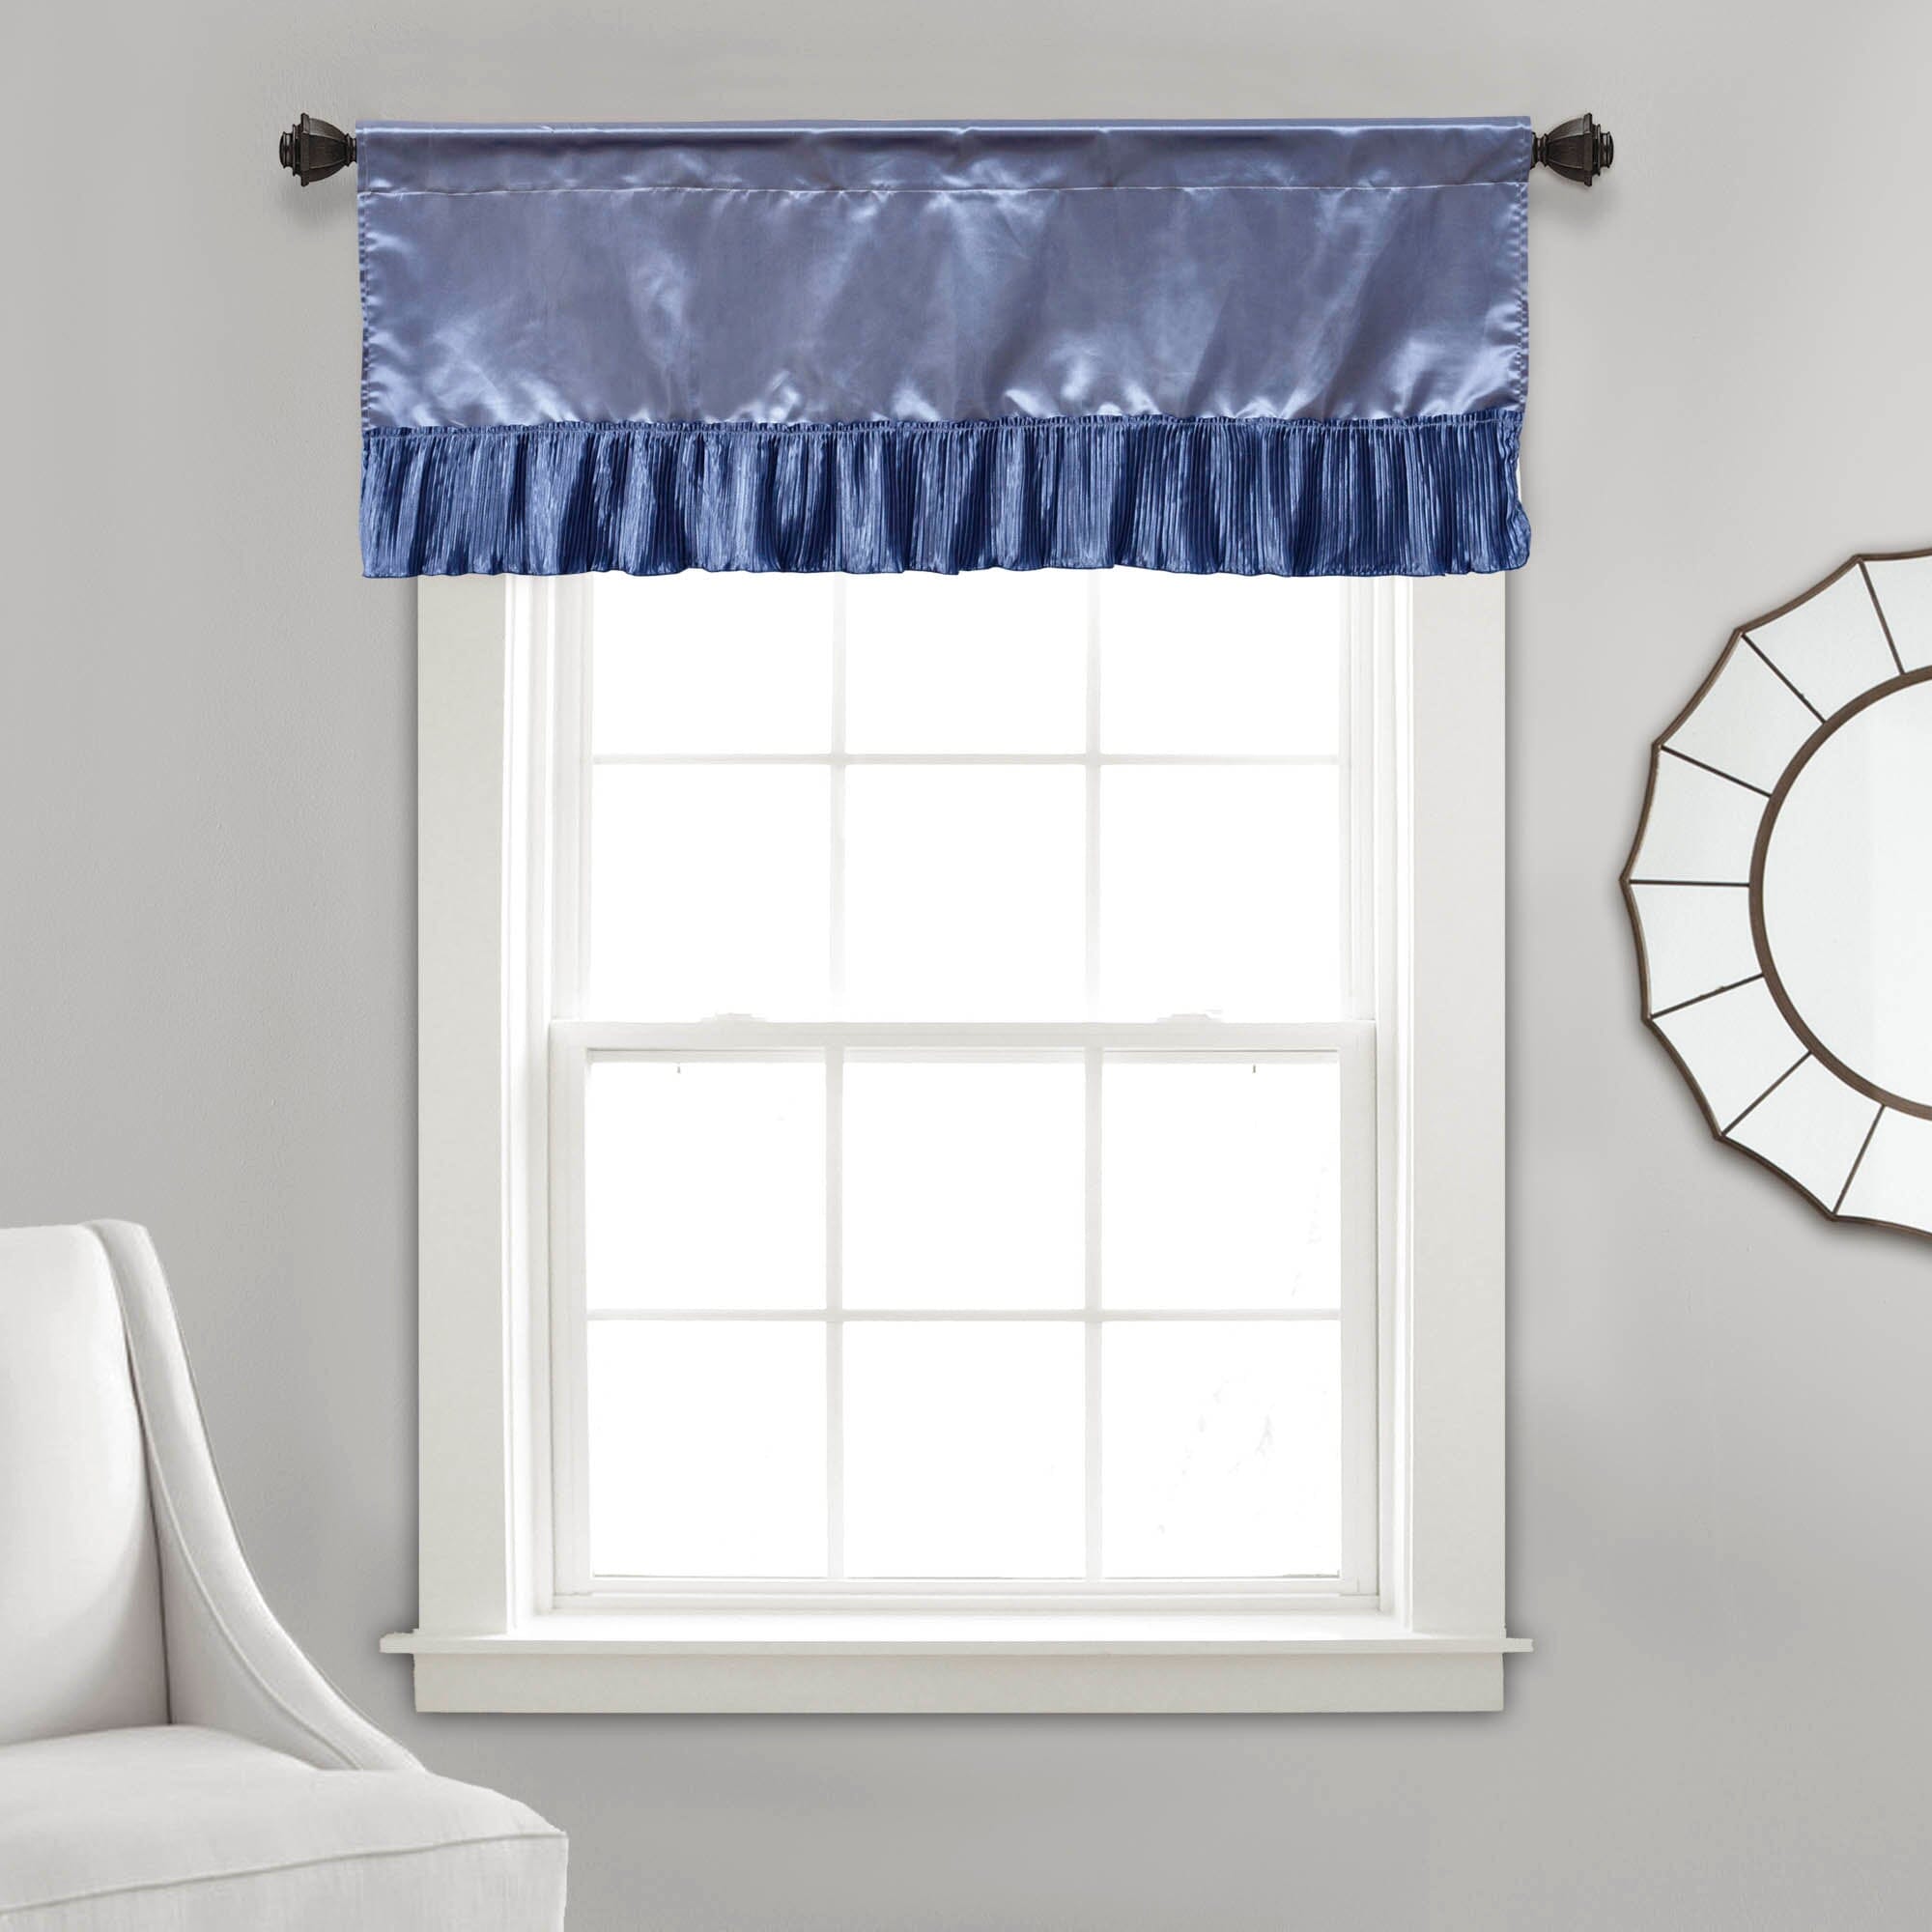 Tache Satin Ruffle Sweet Victorian Window Curtain Tailored Valance 18x52" Blue (MZ002) - Tache Home Fashion